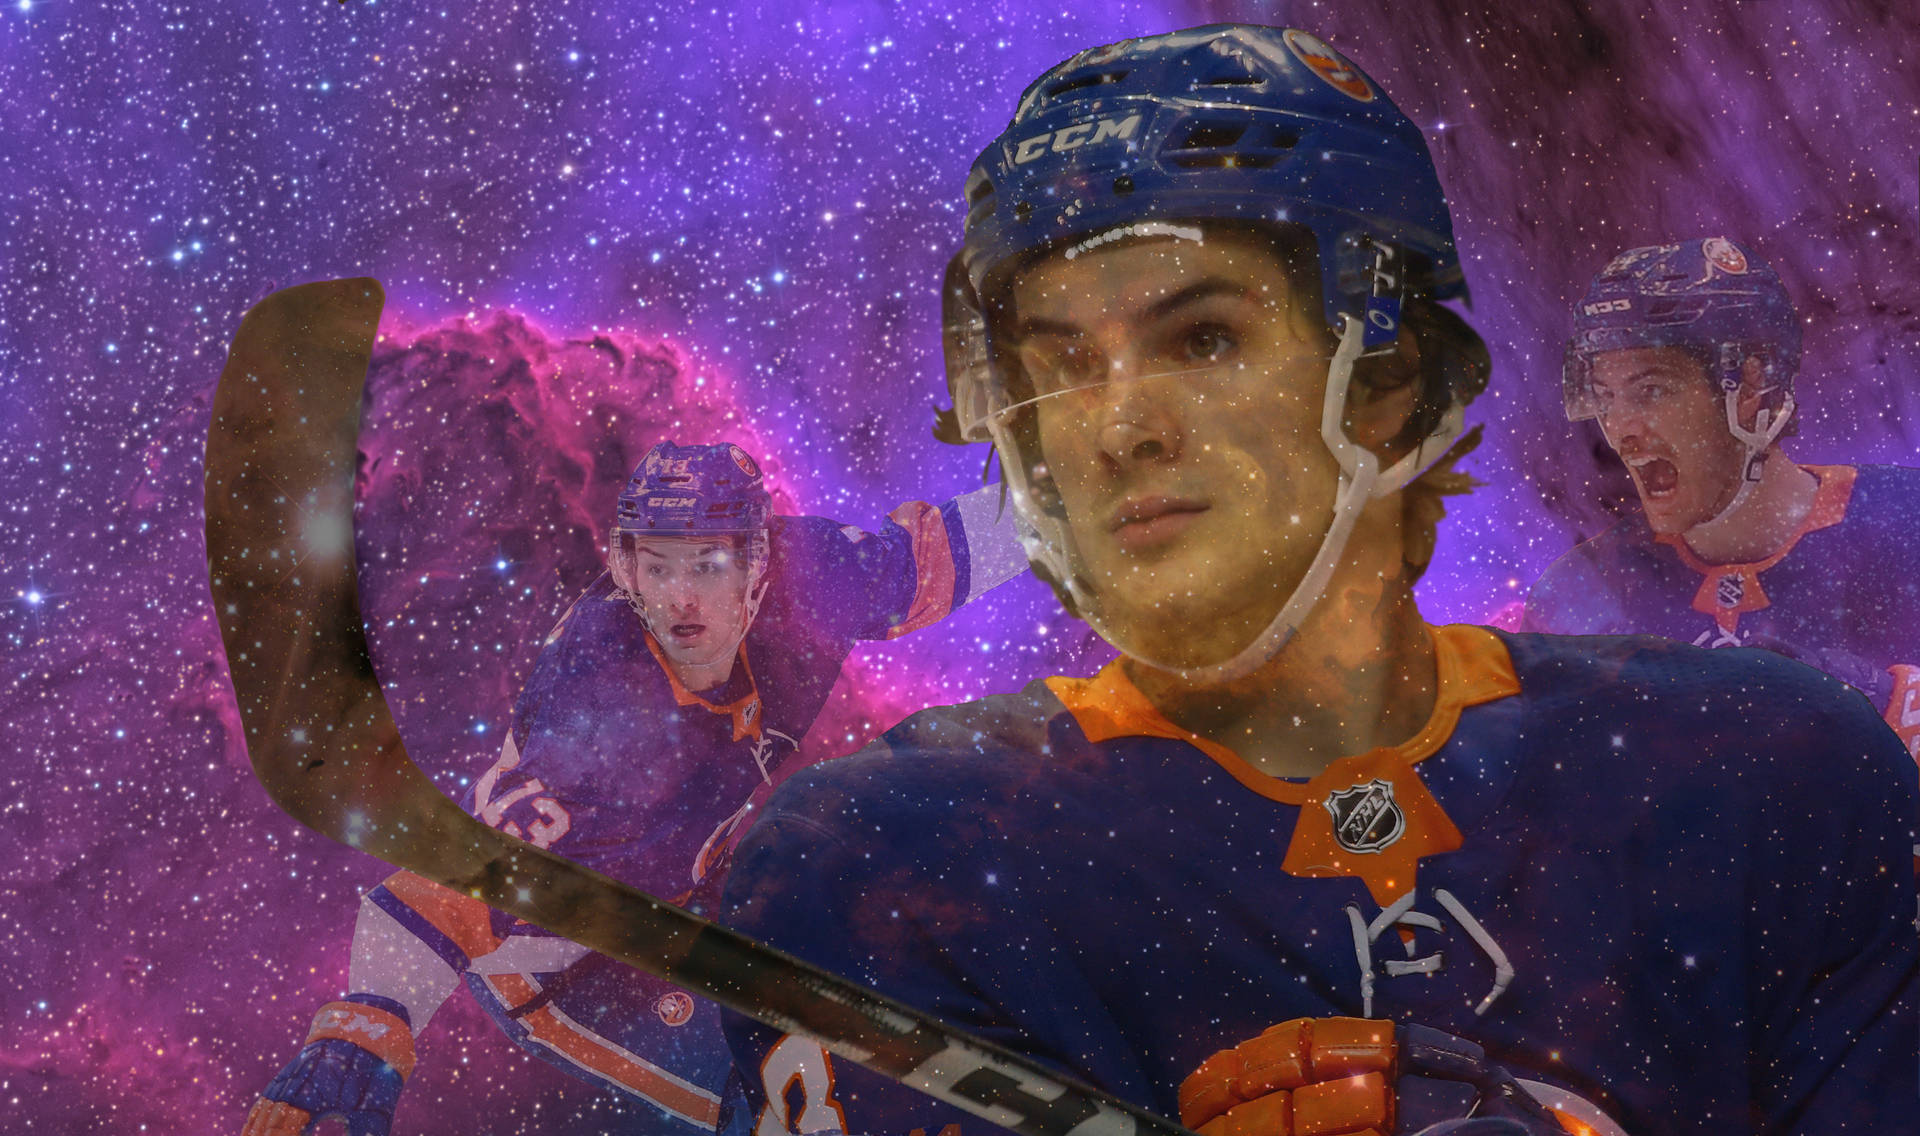 Jugadorcanadiense De Hockey Sobre Hielo, Retrato De Mathew Barzal En Arte Digital. Fondo de pantalla